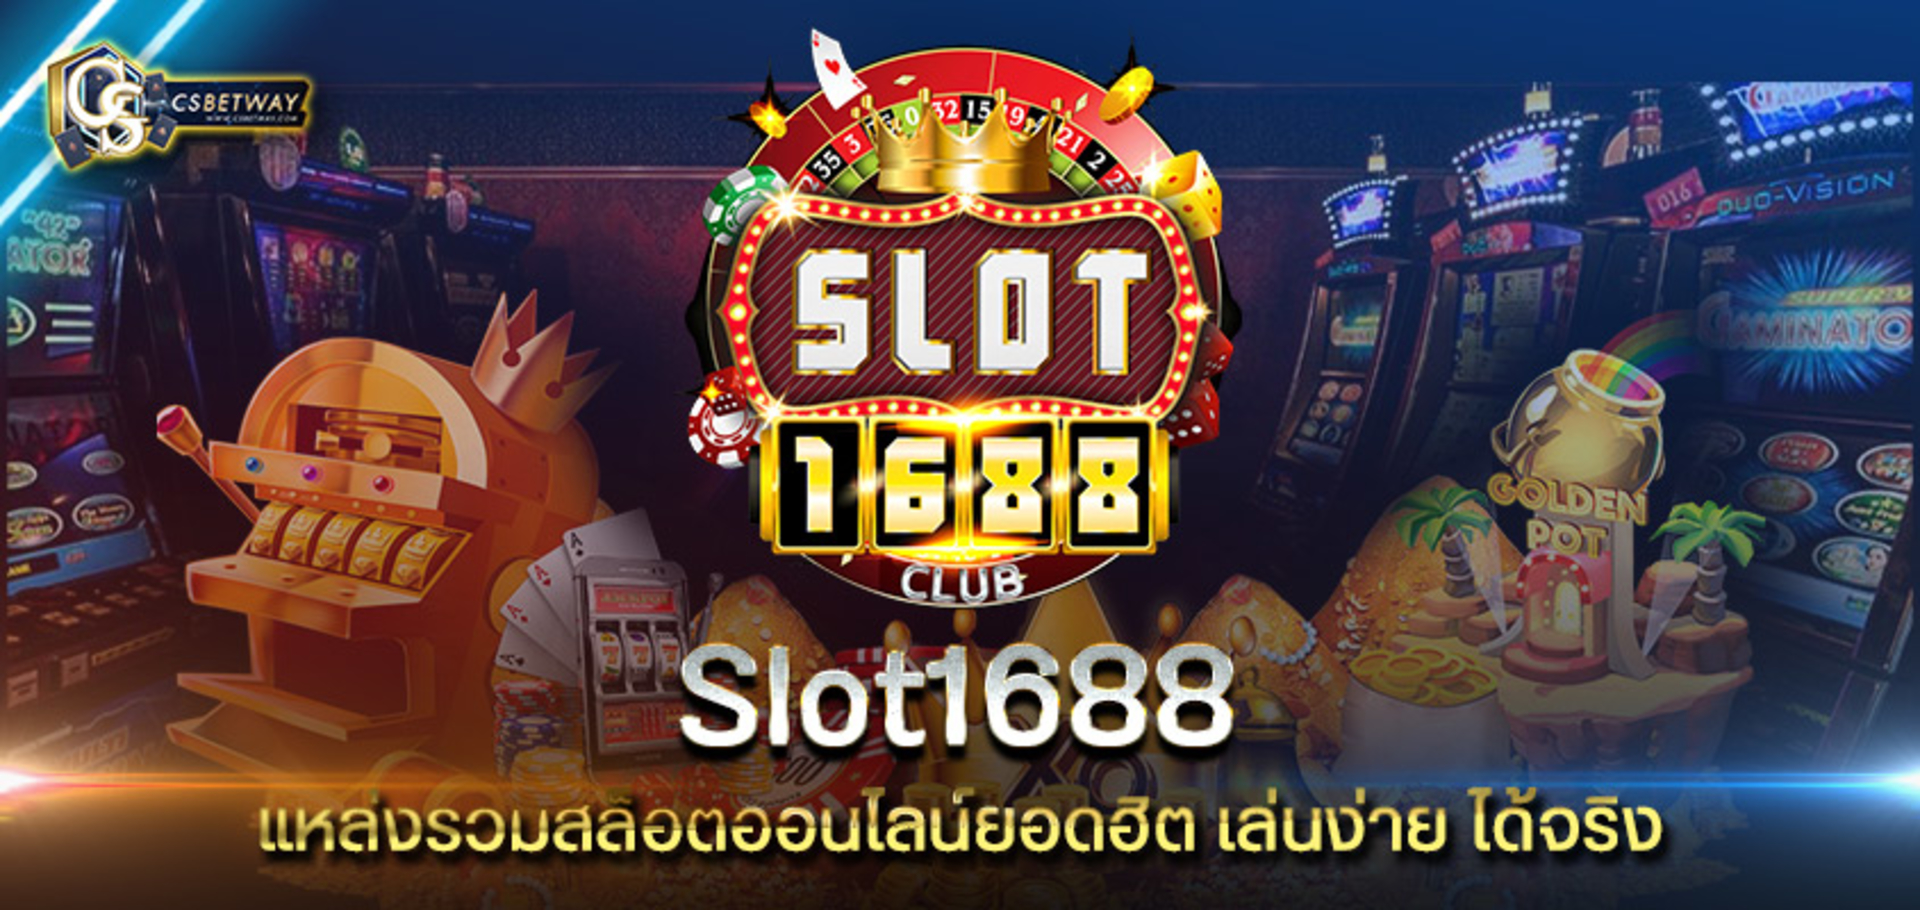 Slot1688 แหล่งรวม สล็อตออนไลน์ยอดฮิต เล่นง่าย ได้จริง พร้อมโปรเด็ดมากมาย ที่คุณห้ามพลาด!! เกมสล็อต